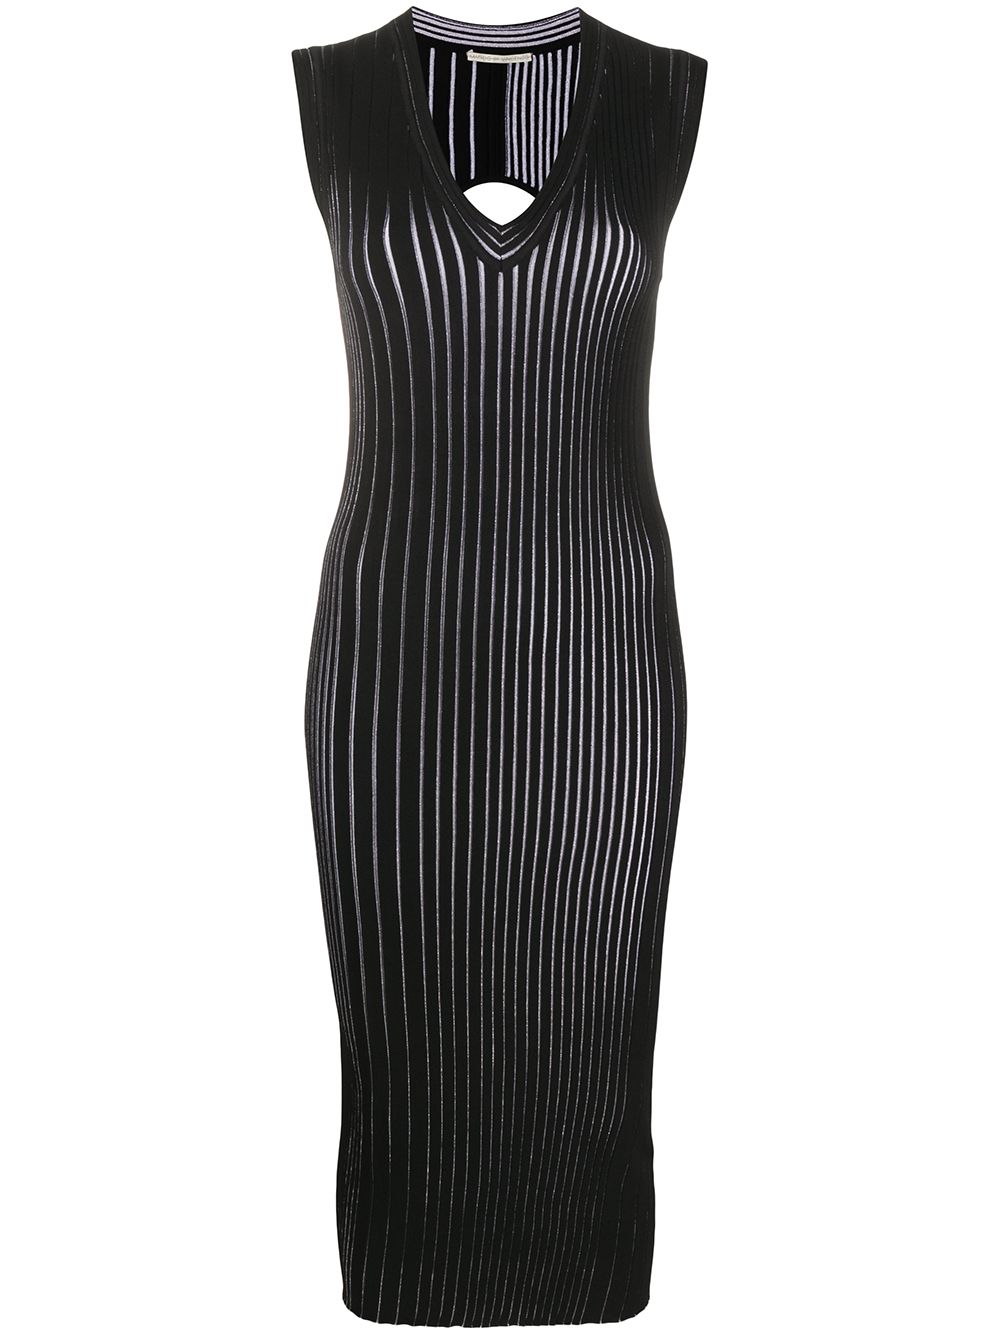 фото Marco de vincenzo трикотажное платье в рубчик с v-образным вырезом